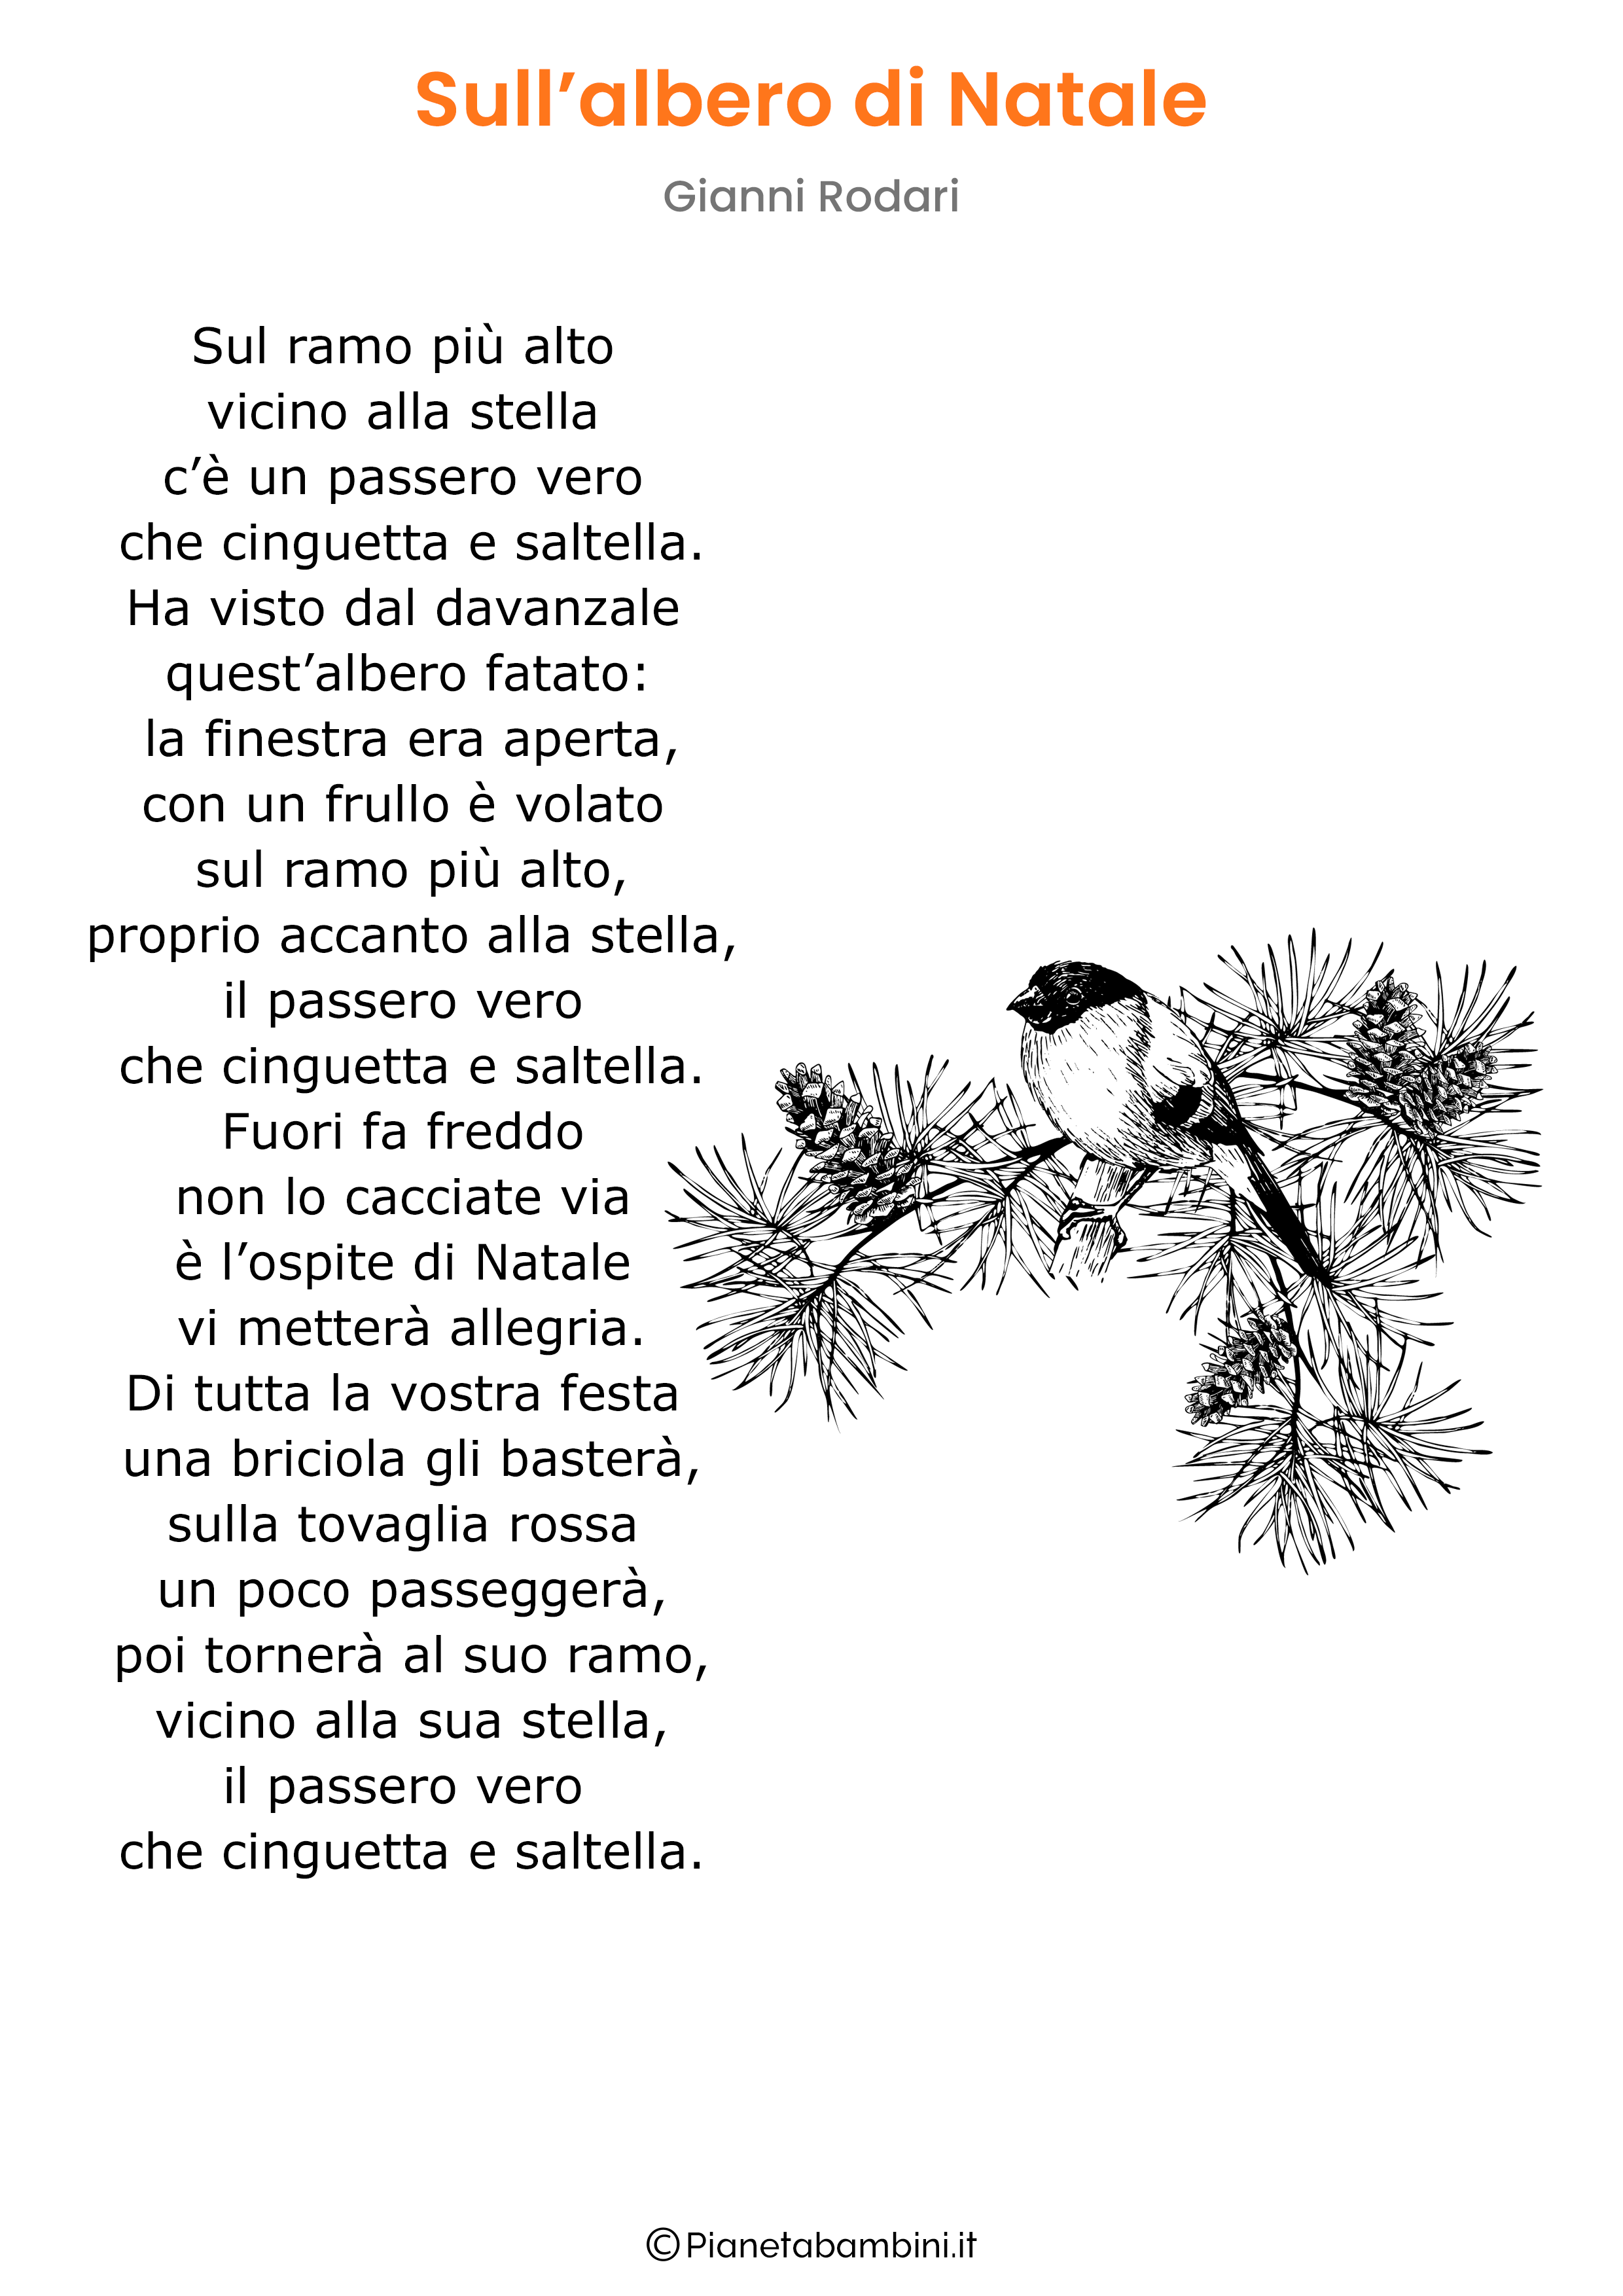 Poesia Sull'Albero Di Natale do Gianni Rodari da stampare